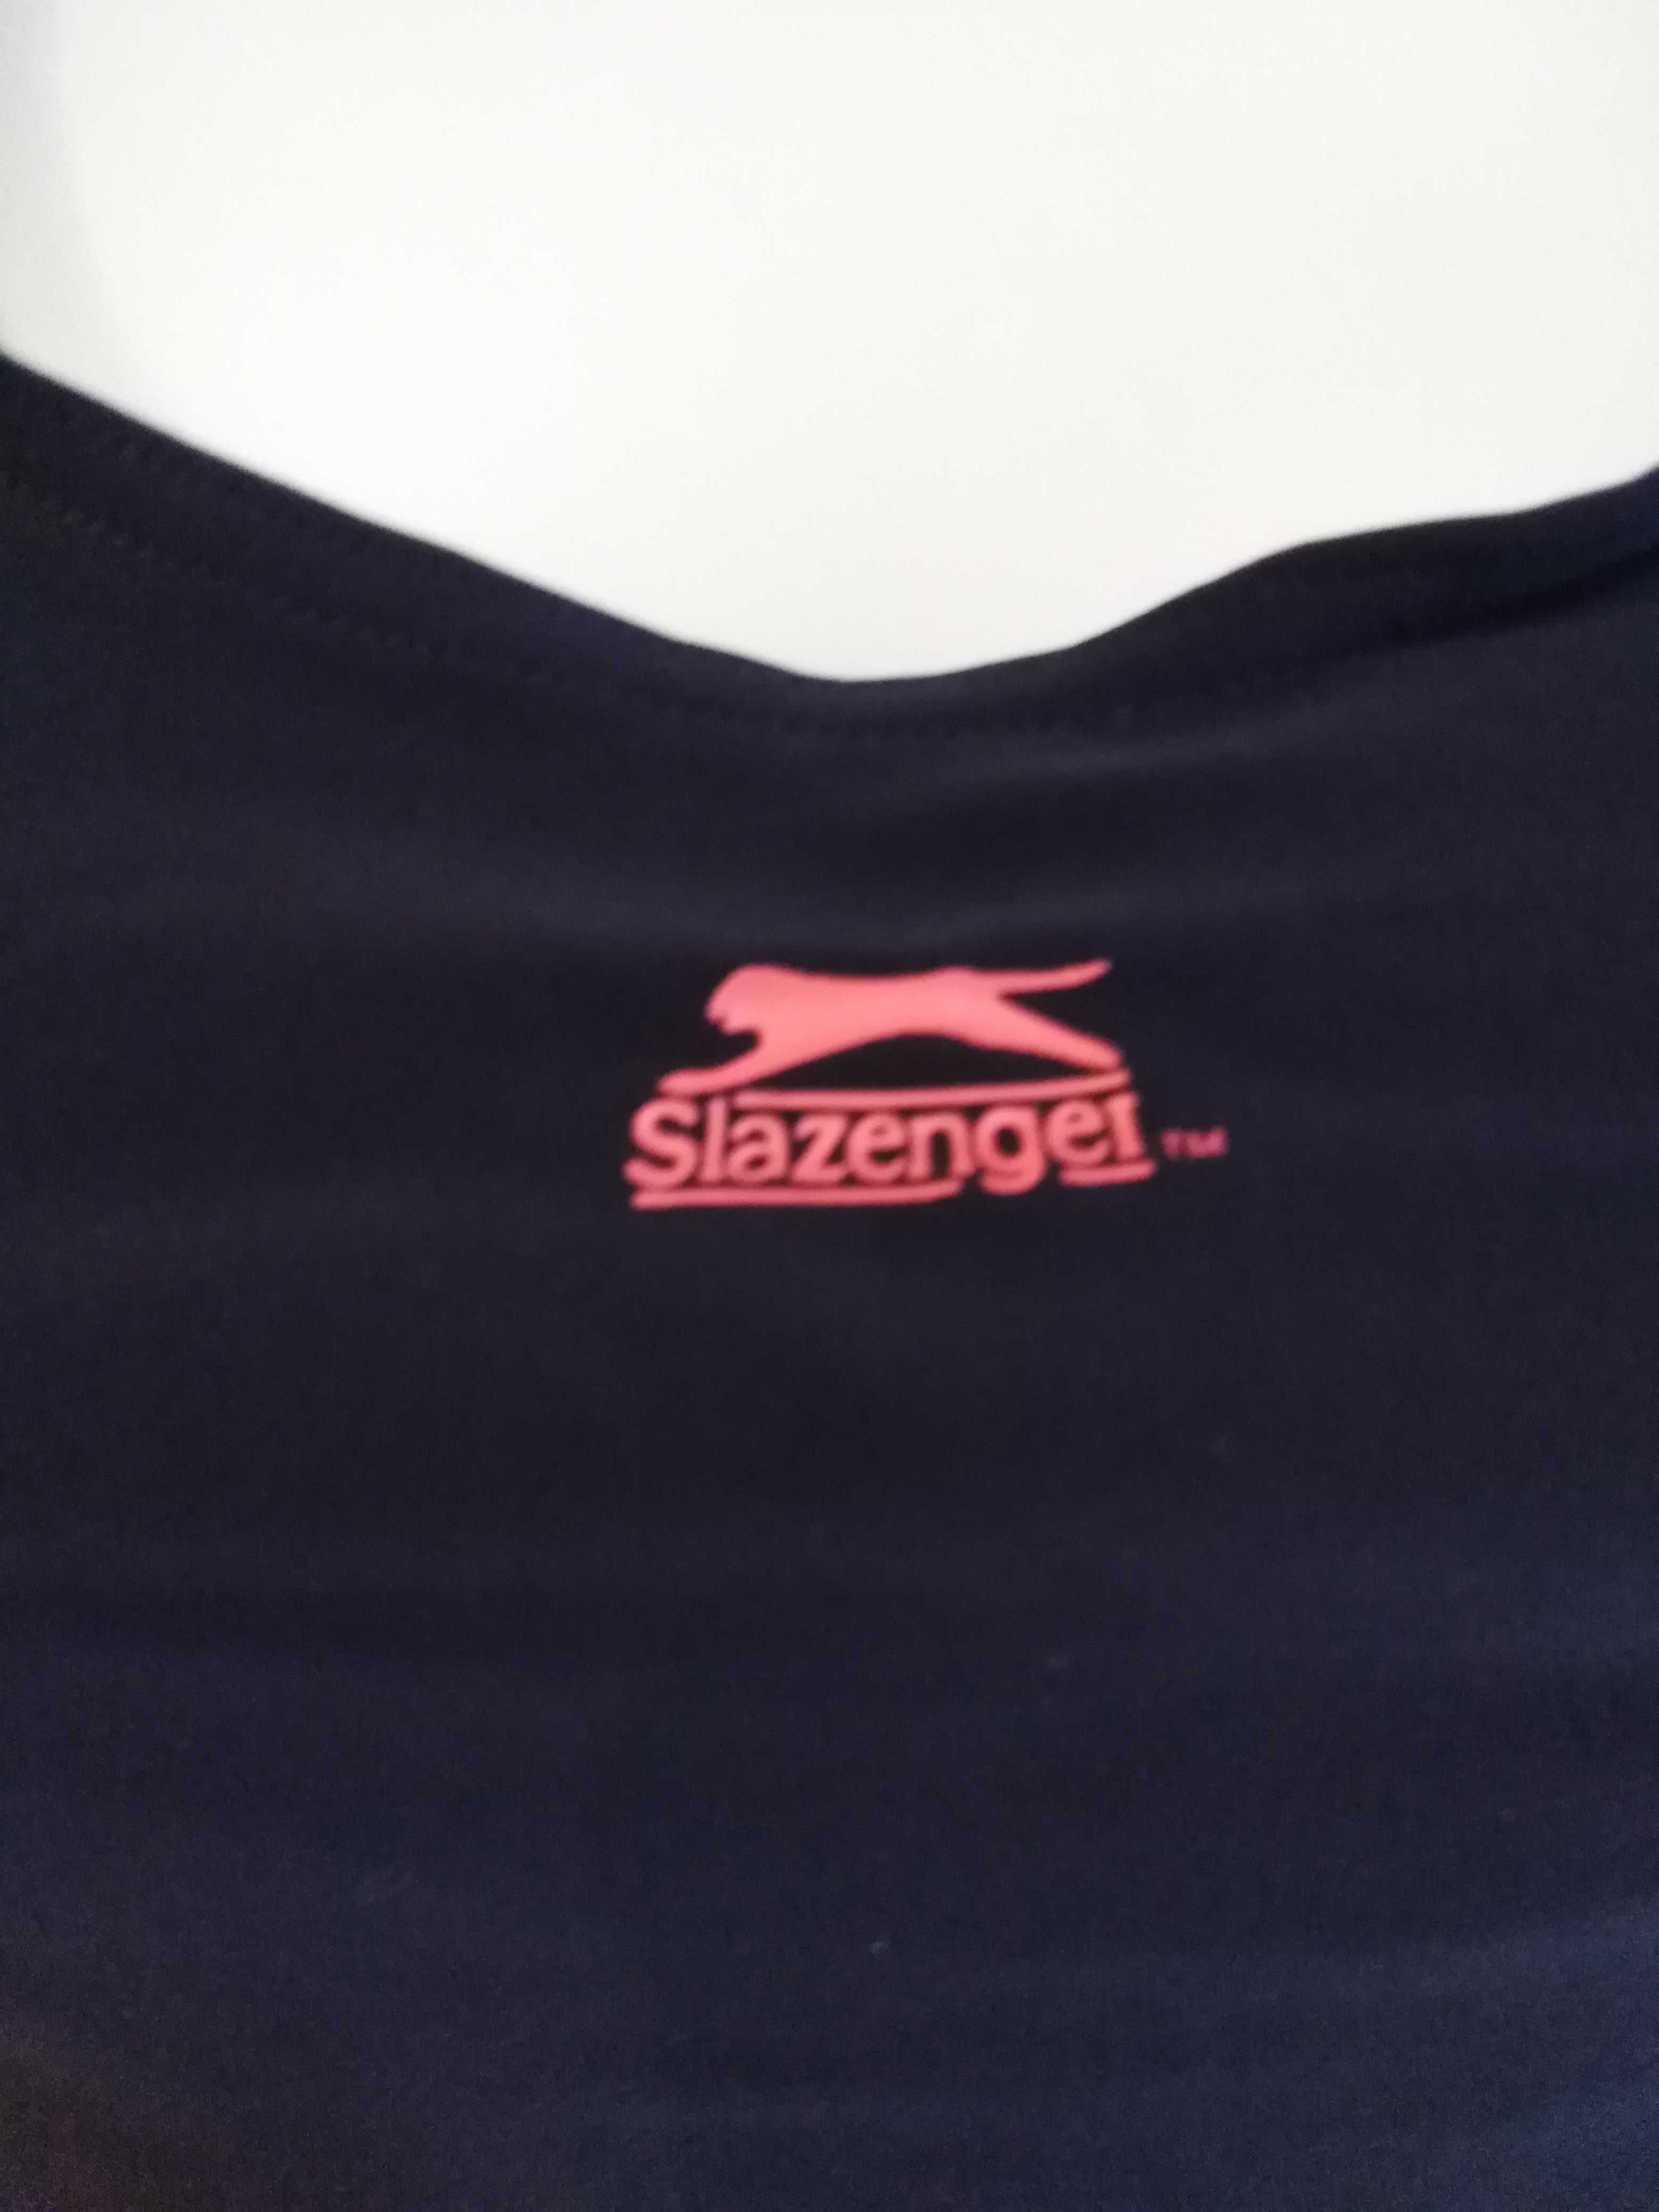 Jednoczęściowy strój kąpielowy firmy Slazenger rozmiar S - używany